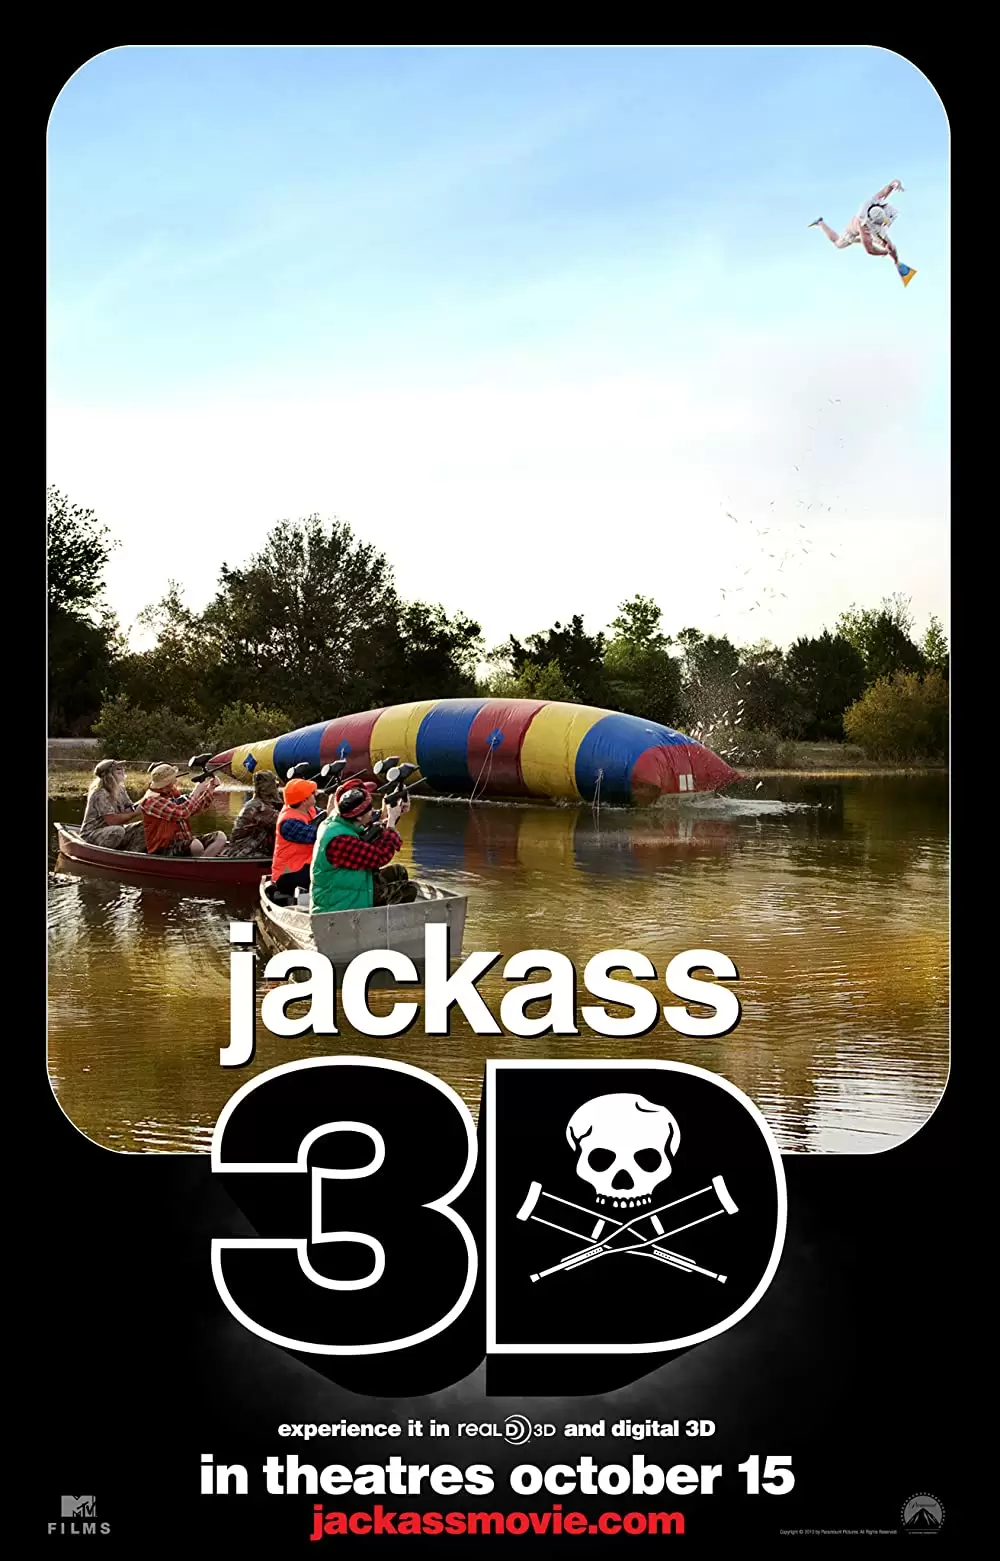 「ジャッカス3D」の画像